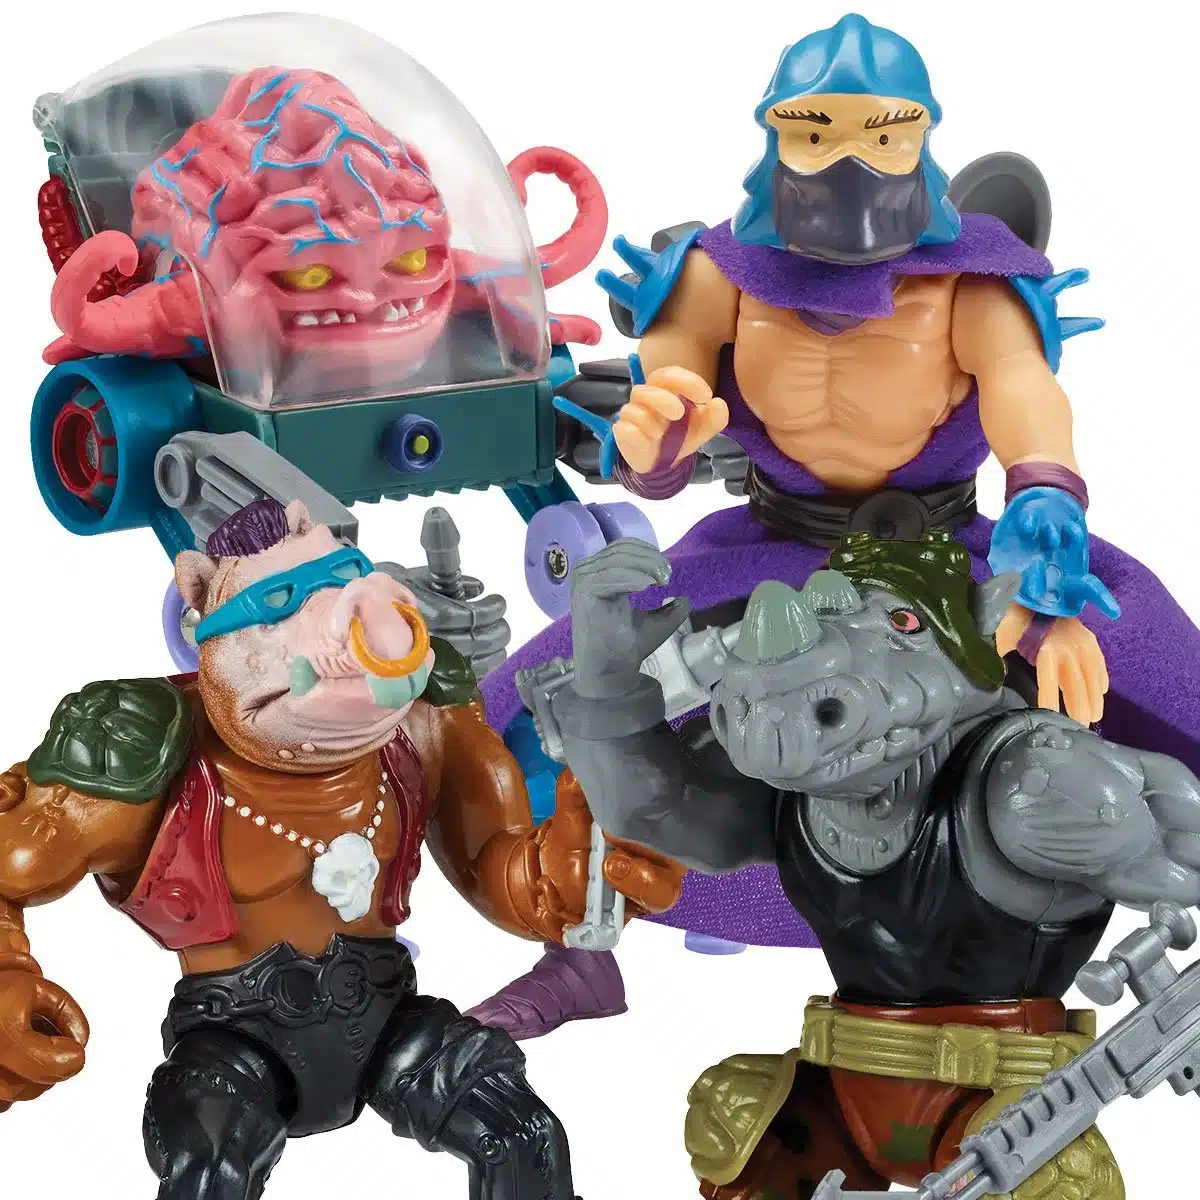 Teenage Mutant Ninja Turtles Toys: How TMNT Inspired a Generation